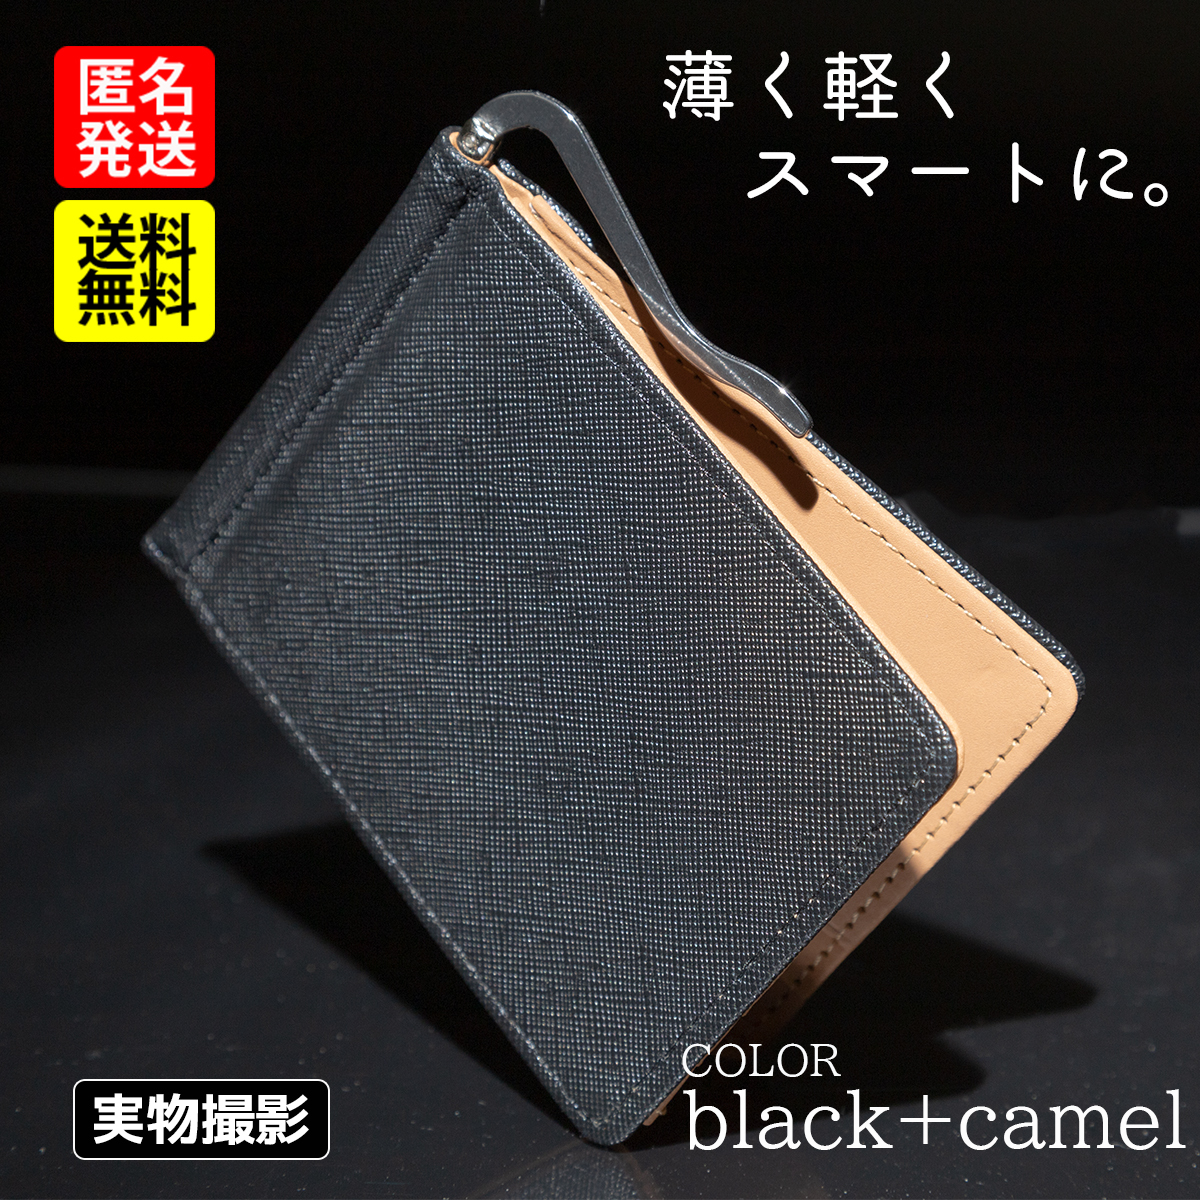 ルブタン 二つ折財布 黒ボタニカル柄 スタッズ コンパクト財布 花柄